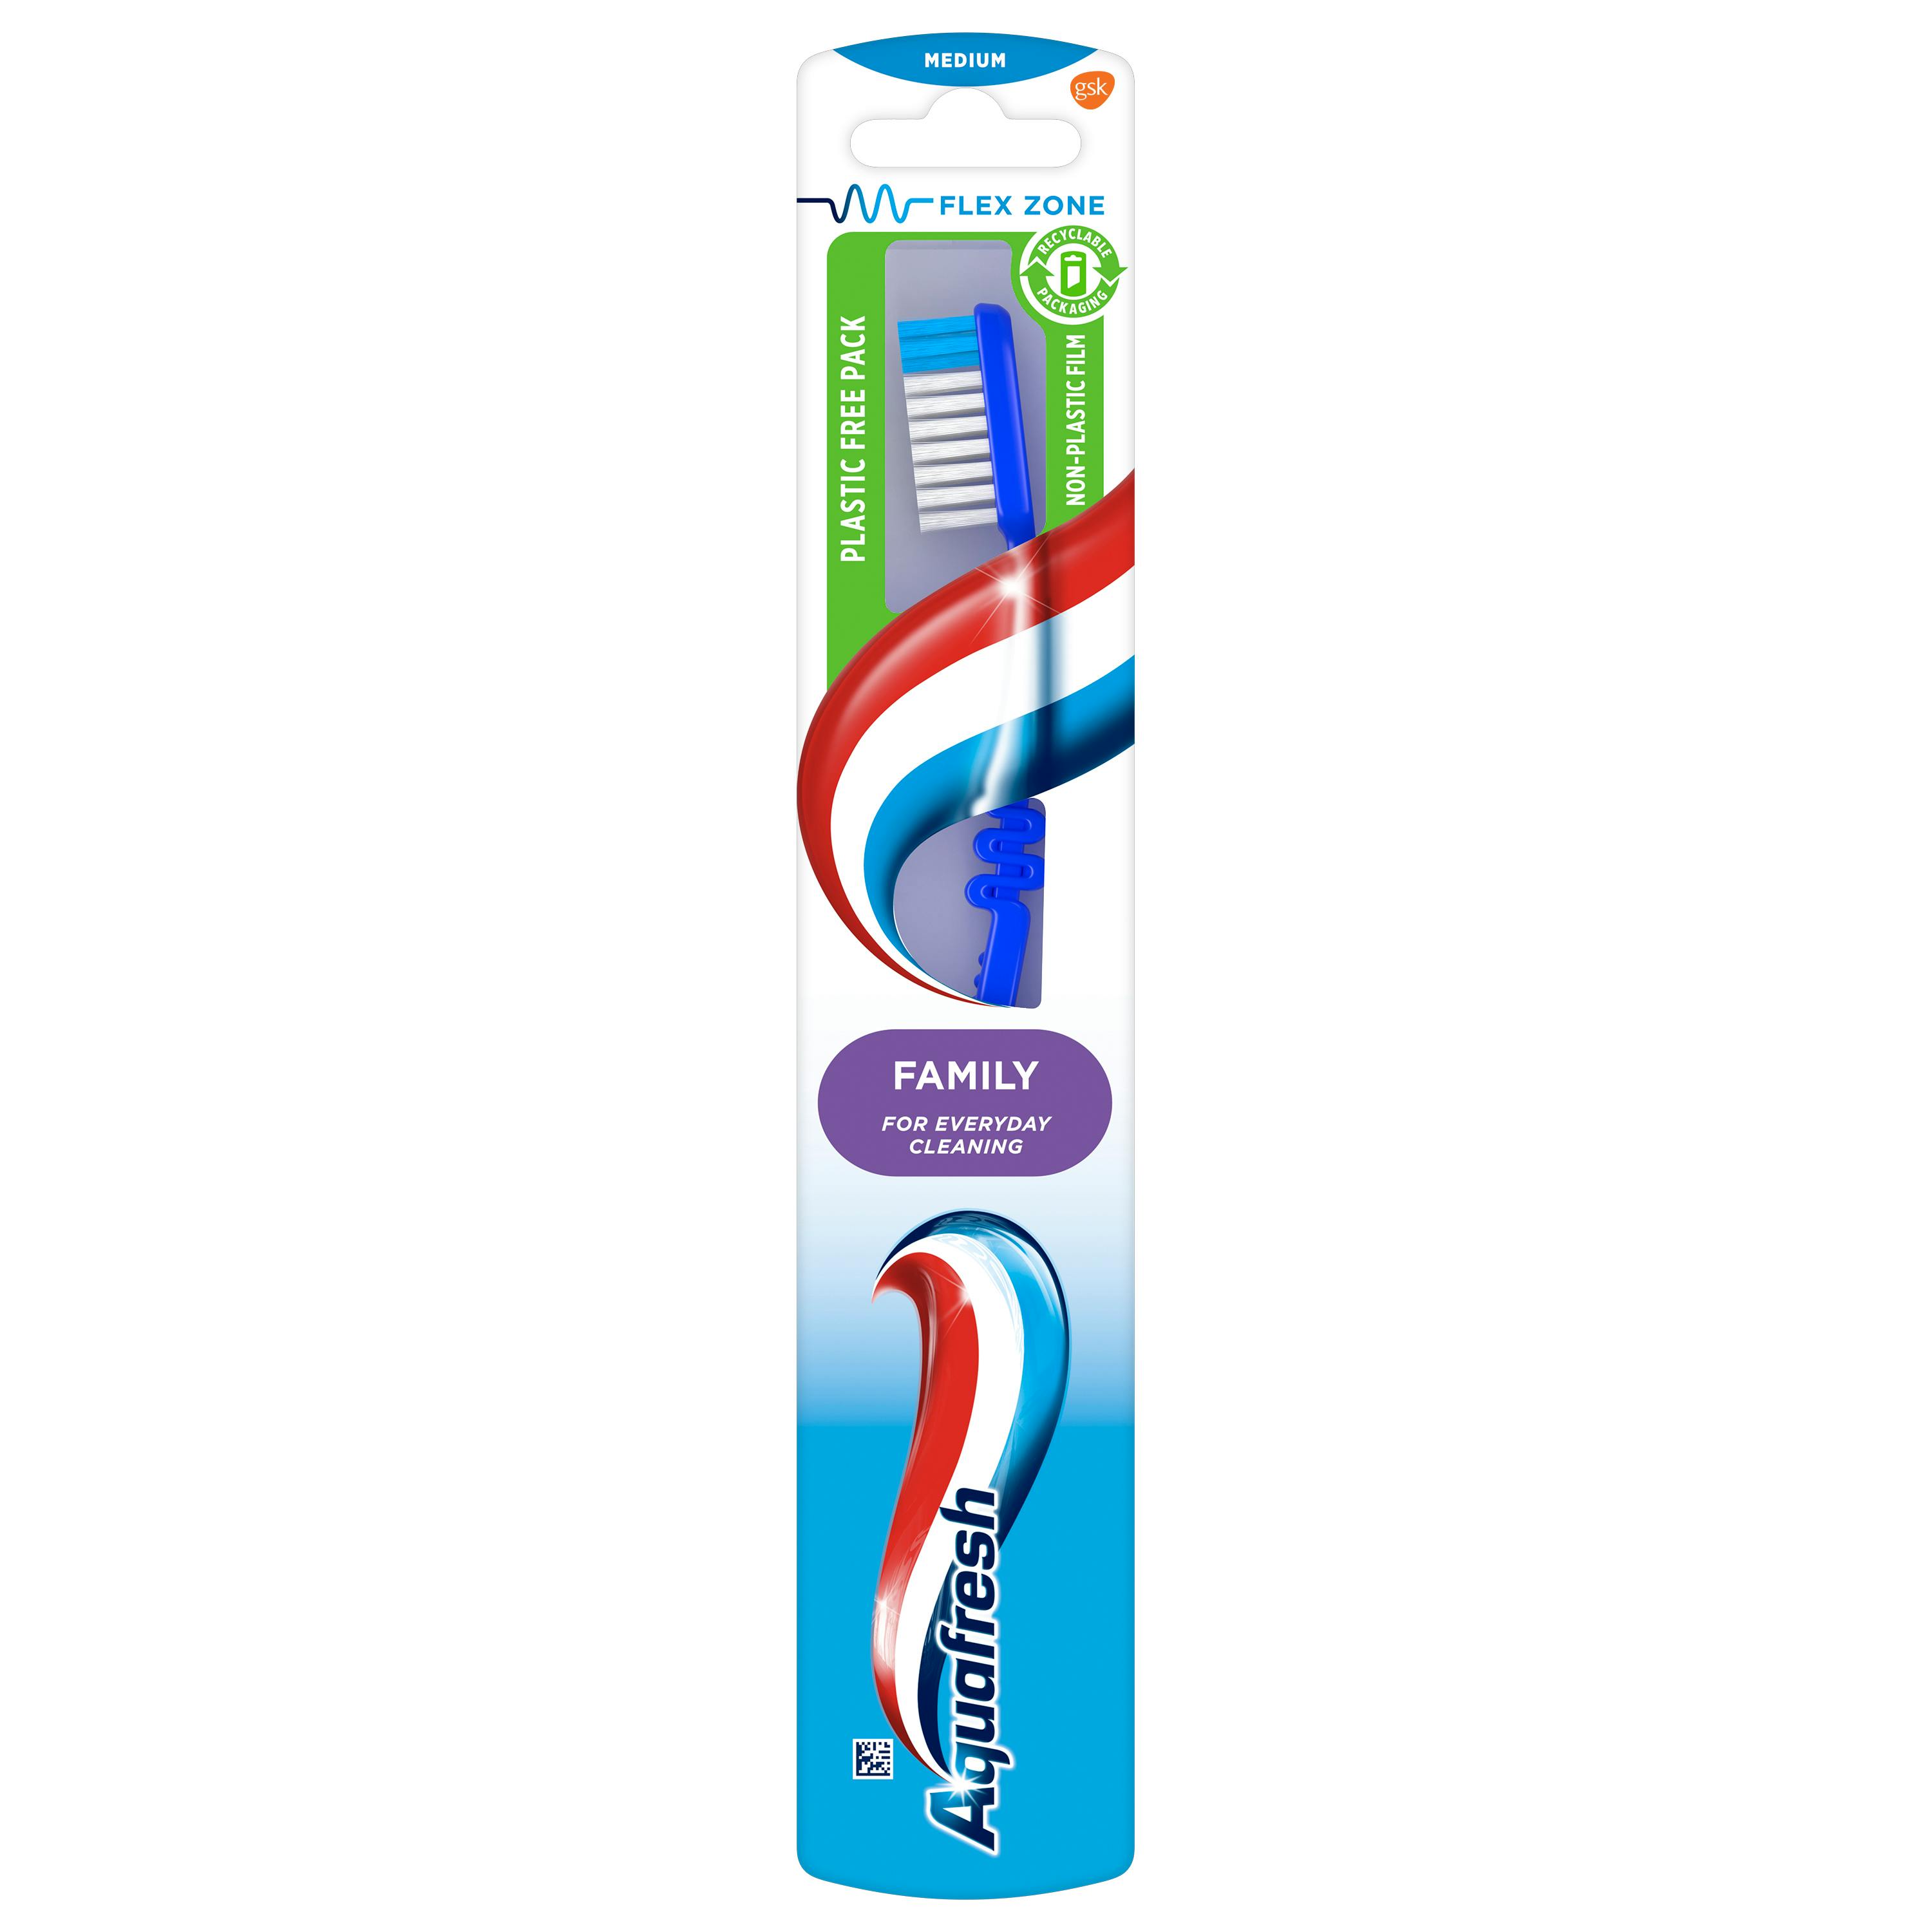 Aquafresh Family Toothbrush Medium